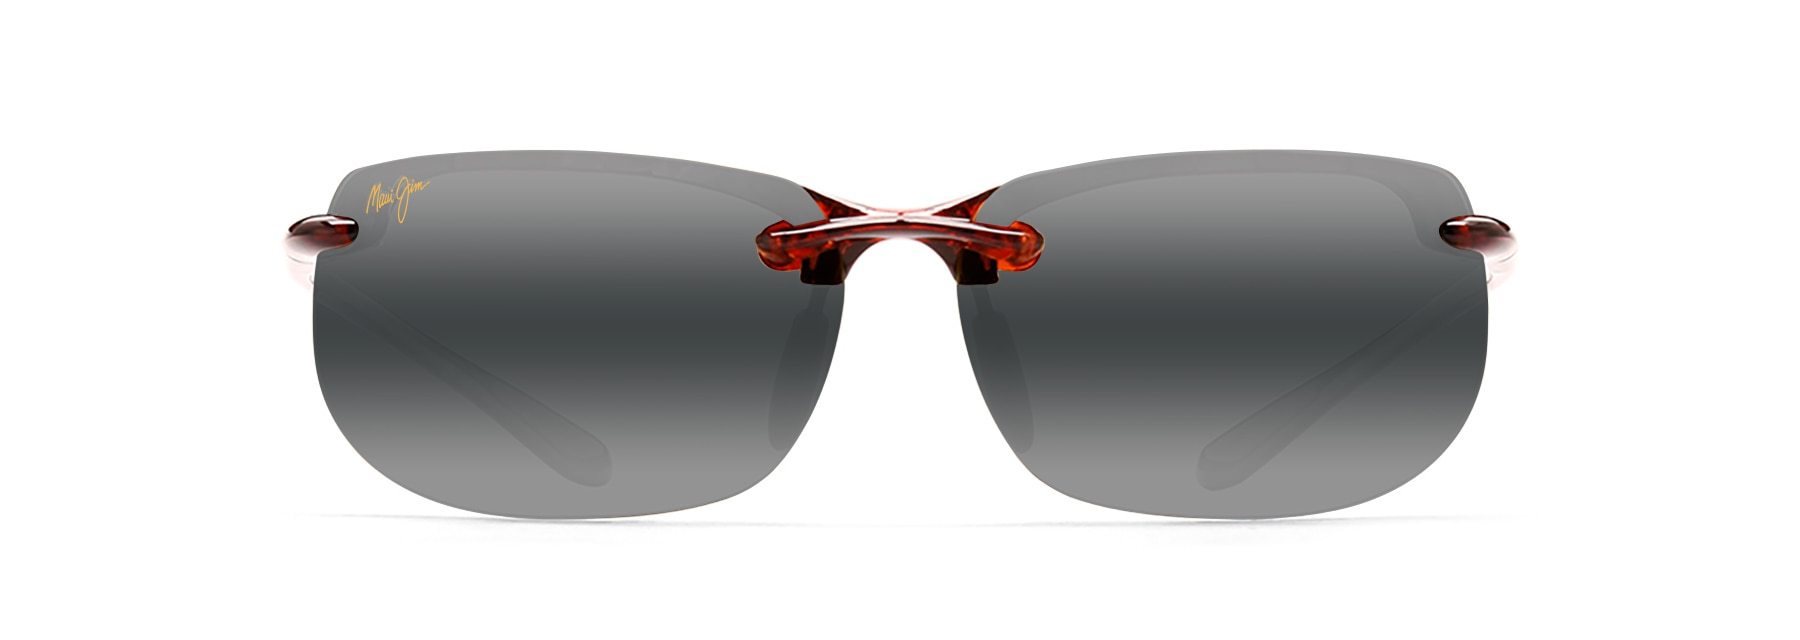 MyMaui Banyans MM412-002 Sunglasses